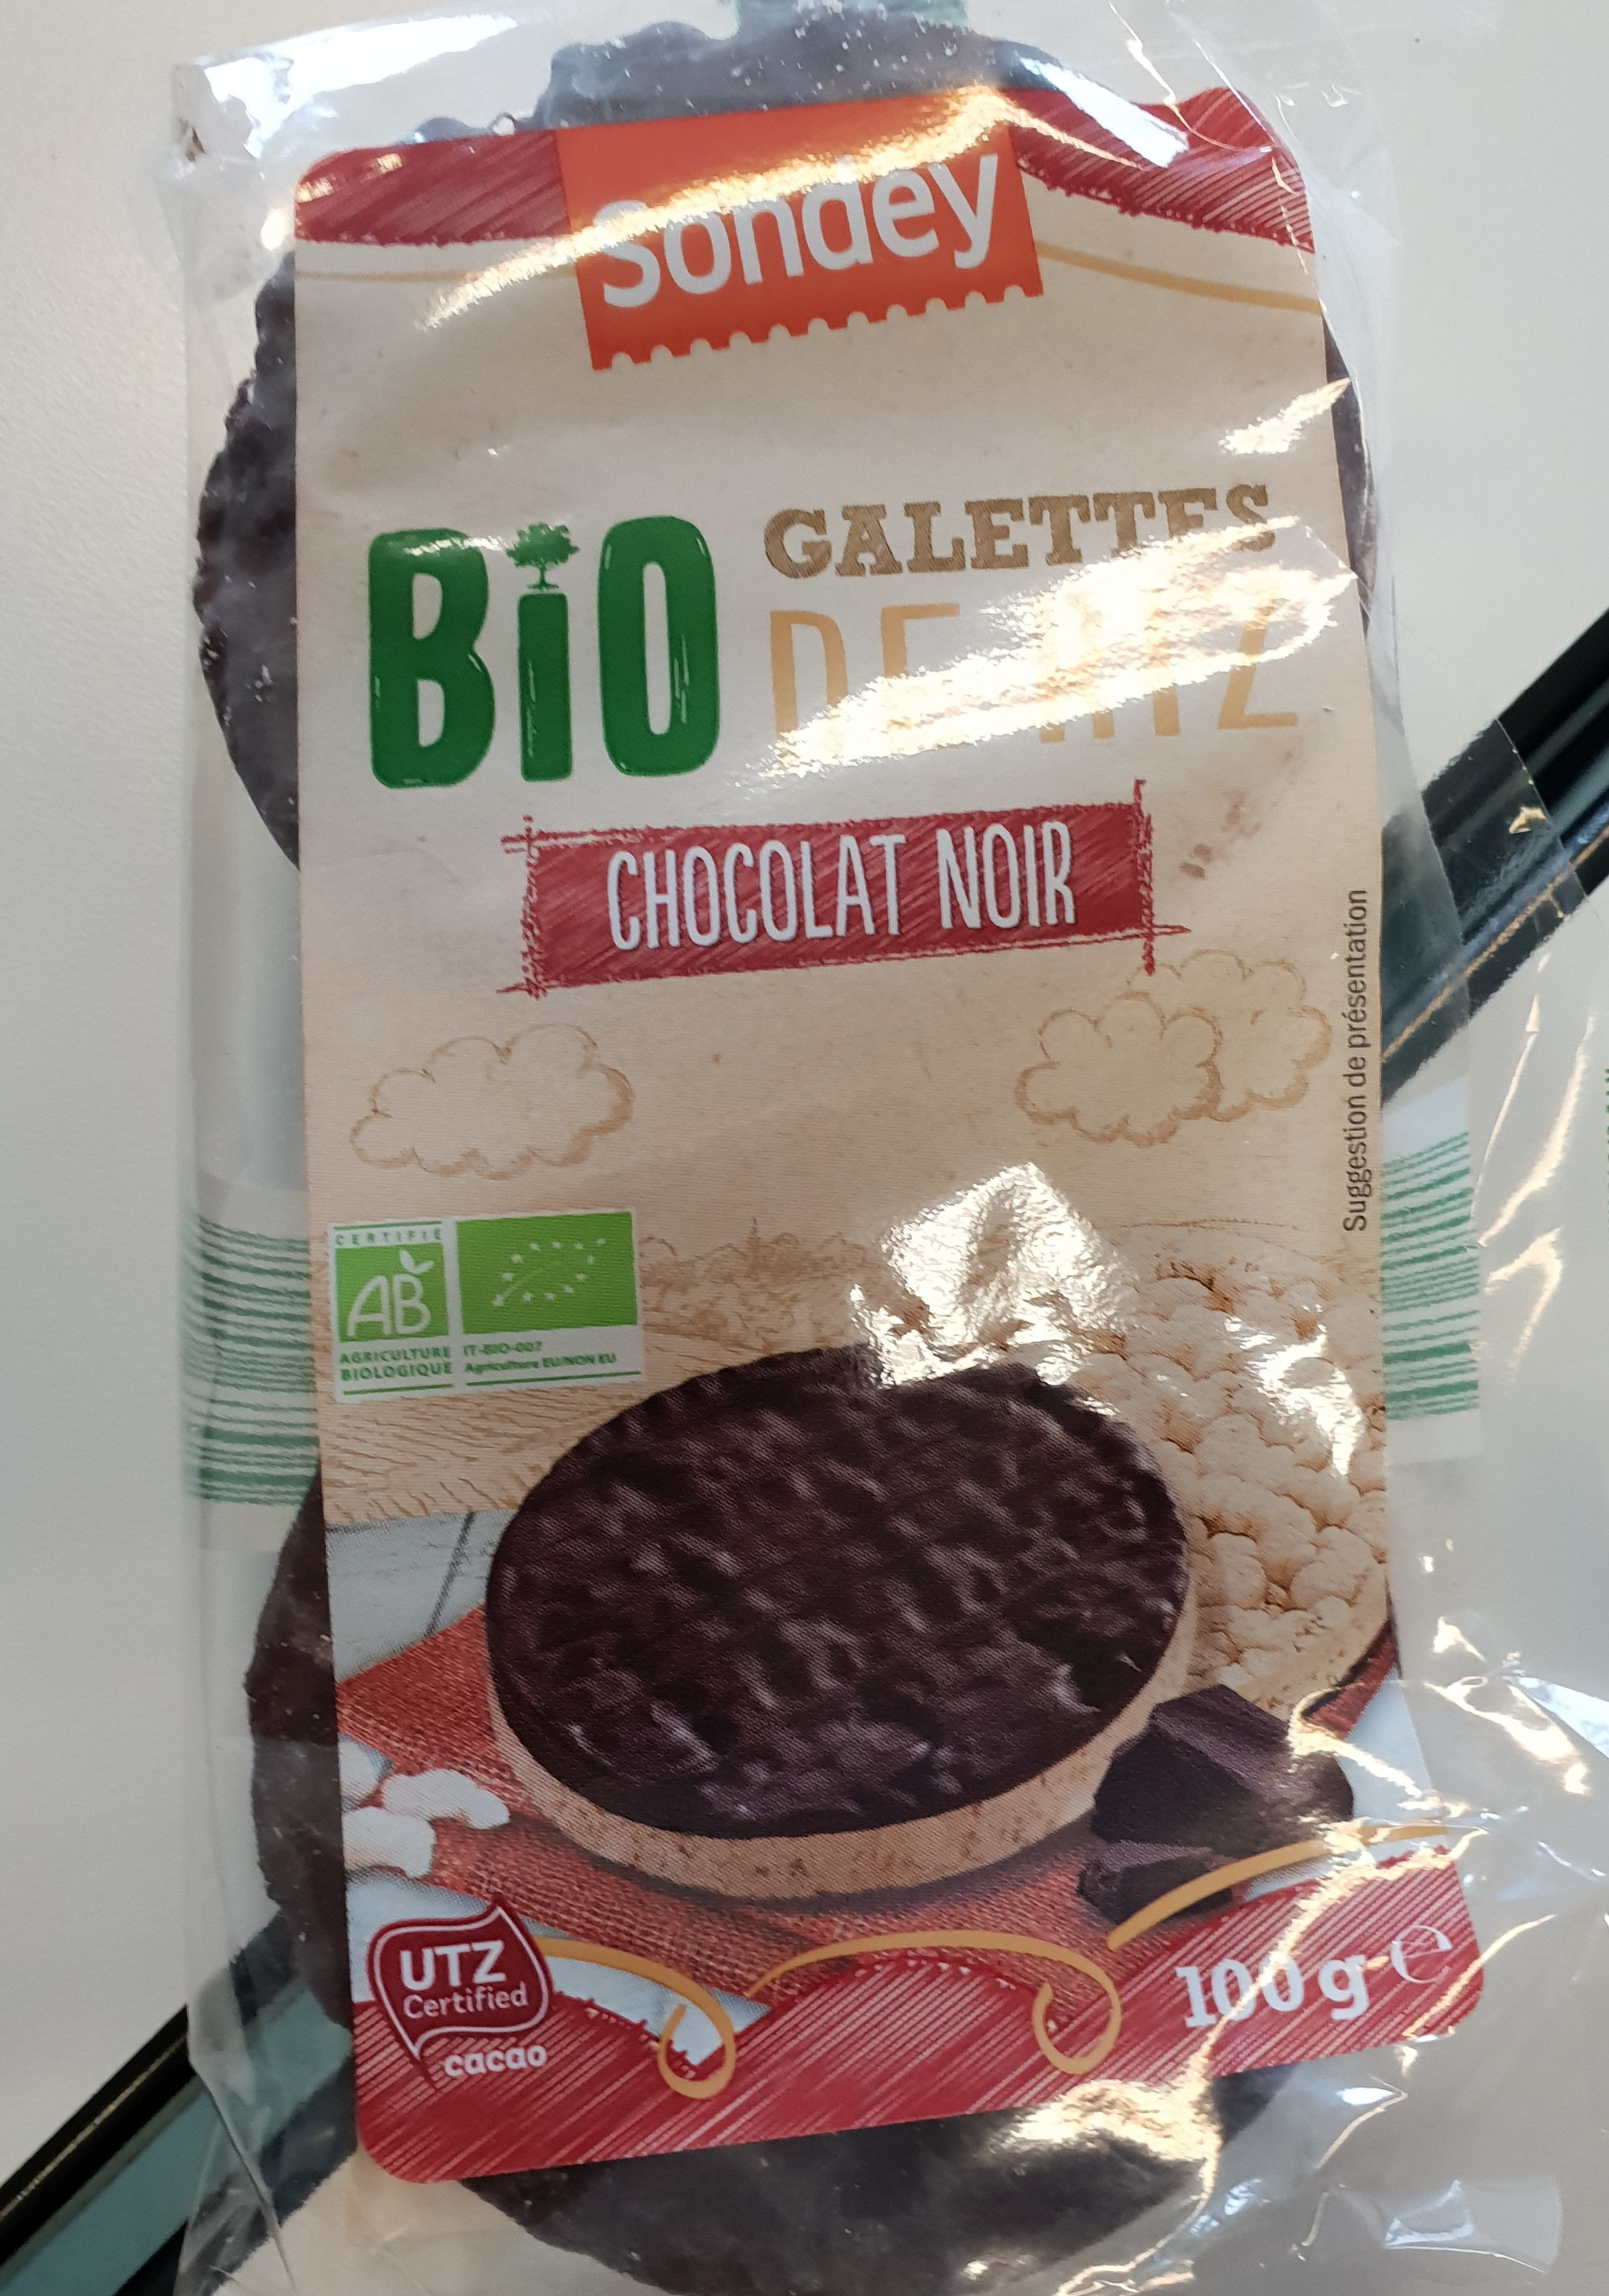 Galettes de Riz au Chocolat Noir BIO - Produit